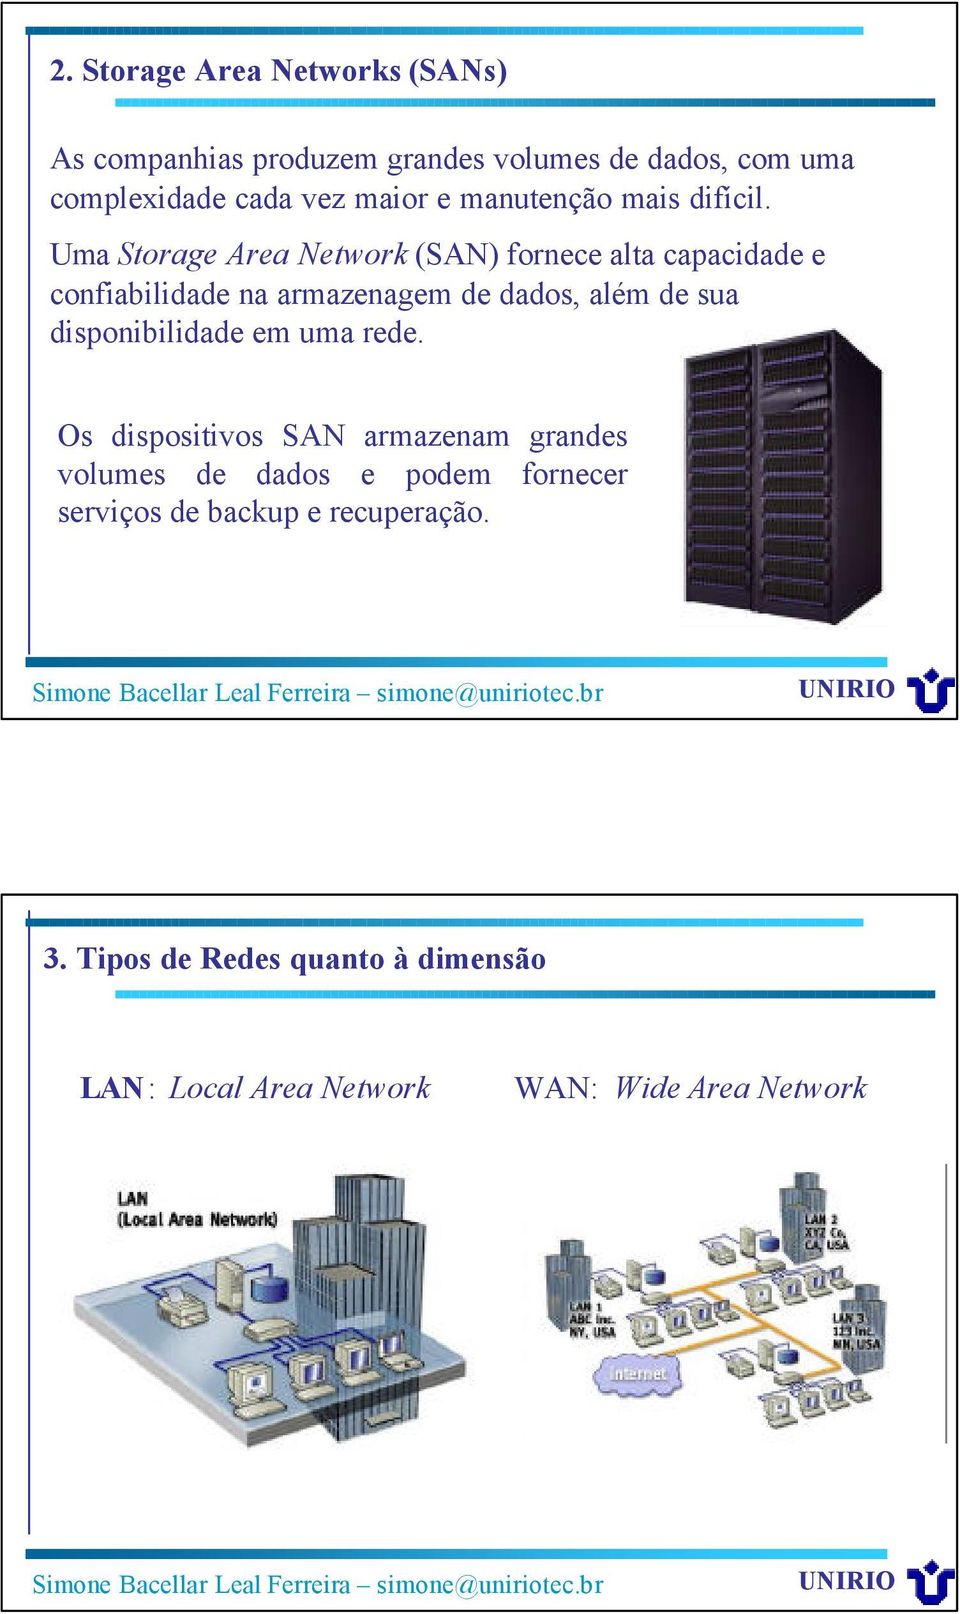 Uma Storage Area Network (SAN) fornece alta capacidade e confiabilidade na armazenagem de dados, além de sua